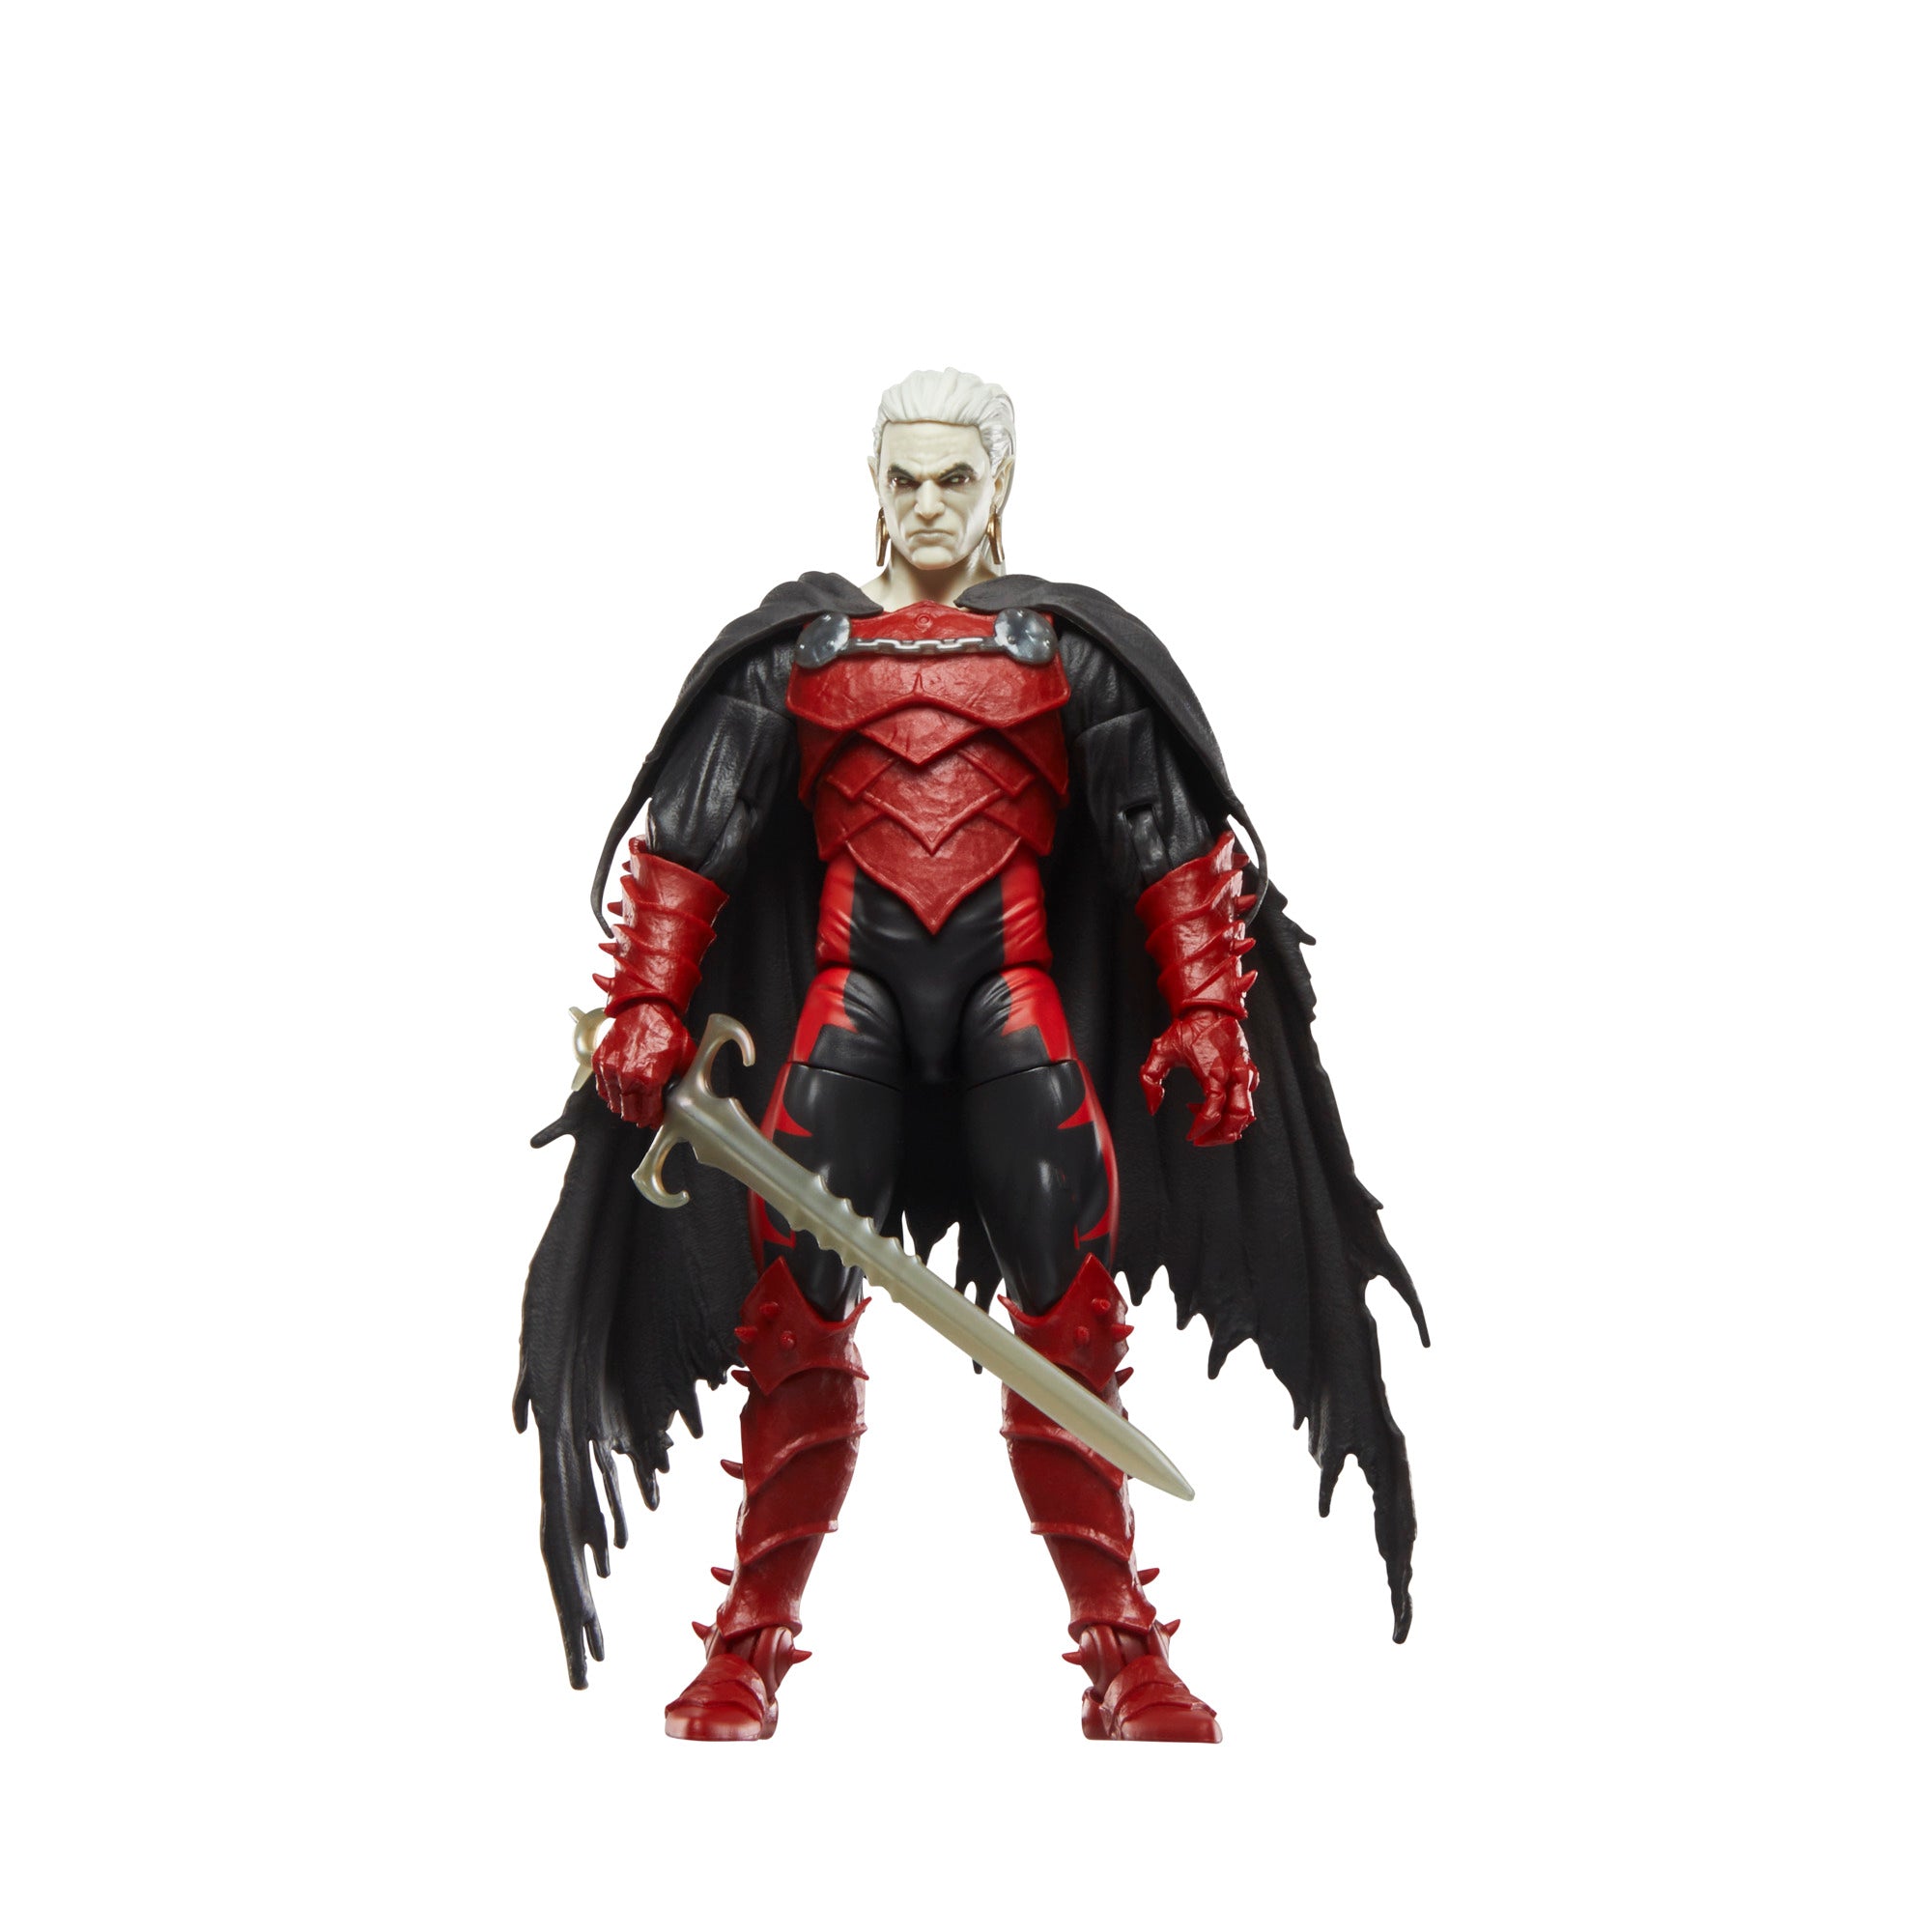 Marvel Legends Baf Blackheart: Comics Strange Tales - Dracula